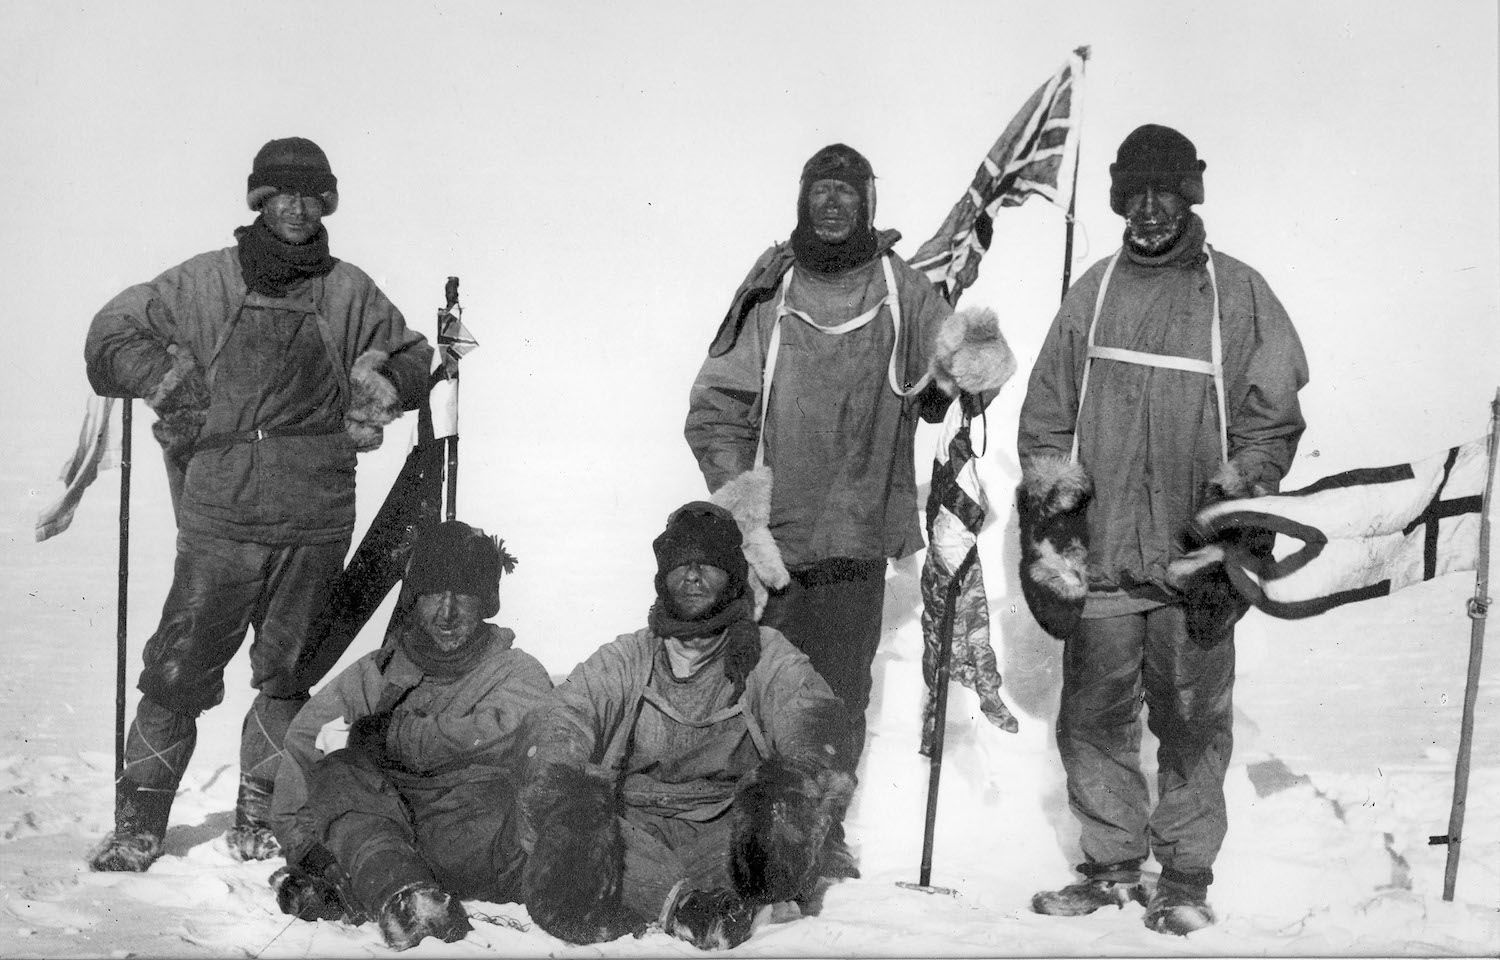 Els membres de l'expedició britànica que van arribar al pol sud